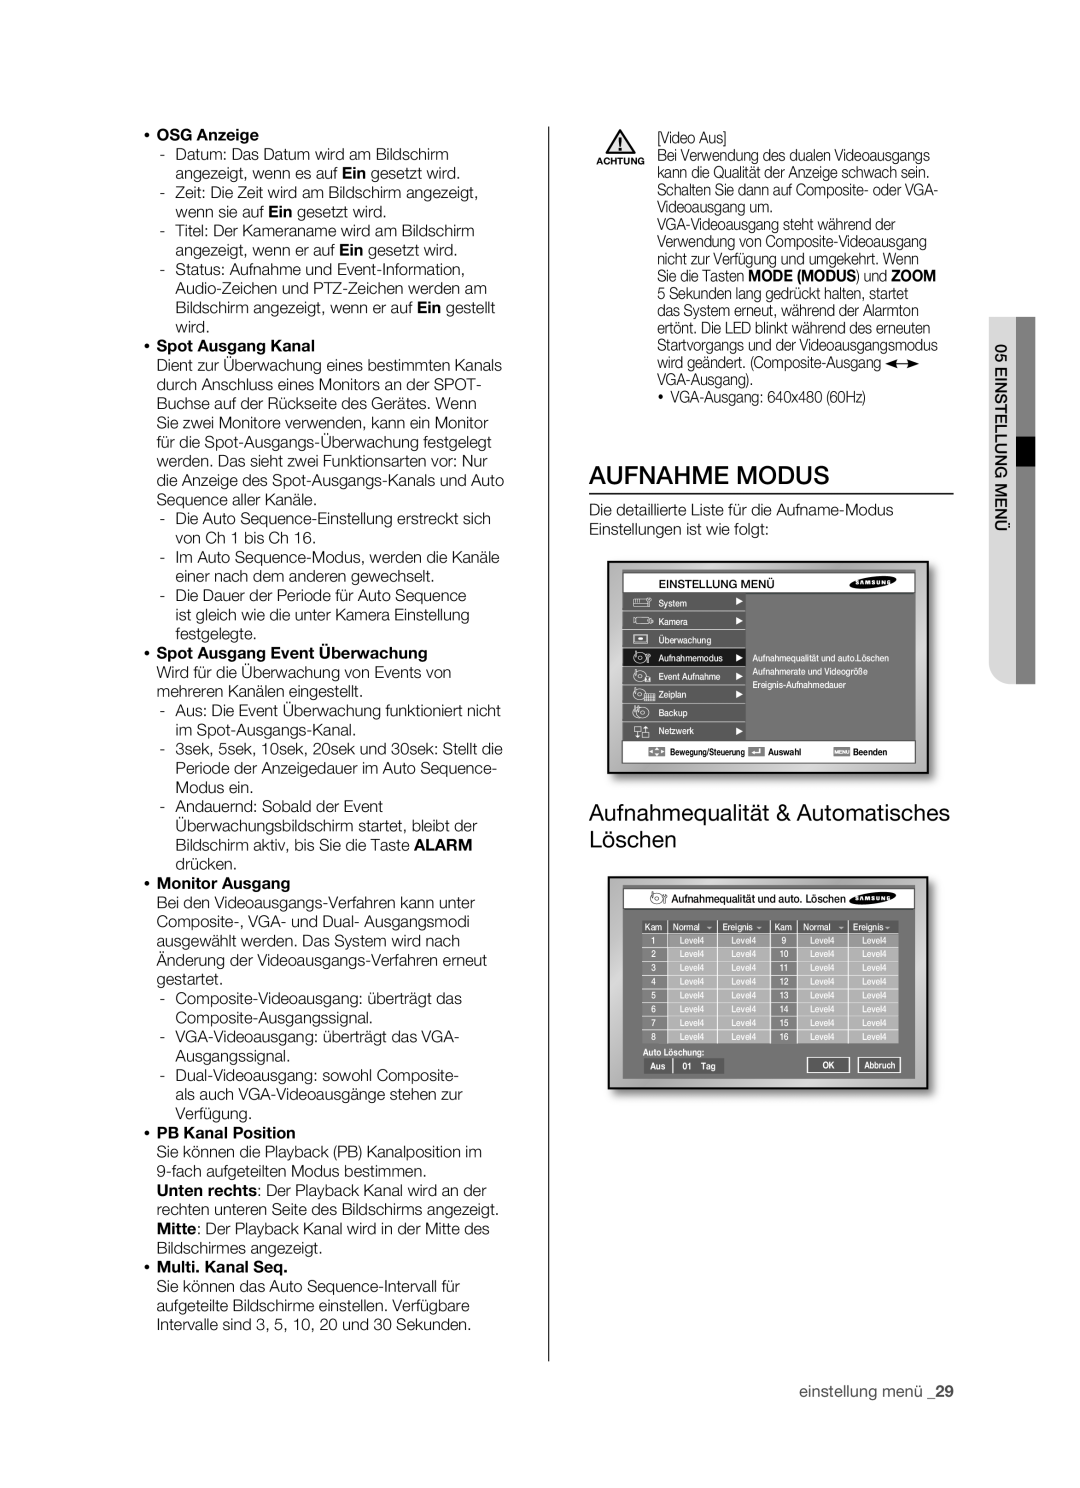 Samsung SHR-5080P manual Aufnahme Modus, Aufnahmequalität & Automatisches, Löschen,  OSG Anzeige,  Spot Ausgang Kanal 